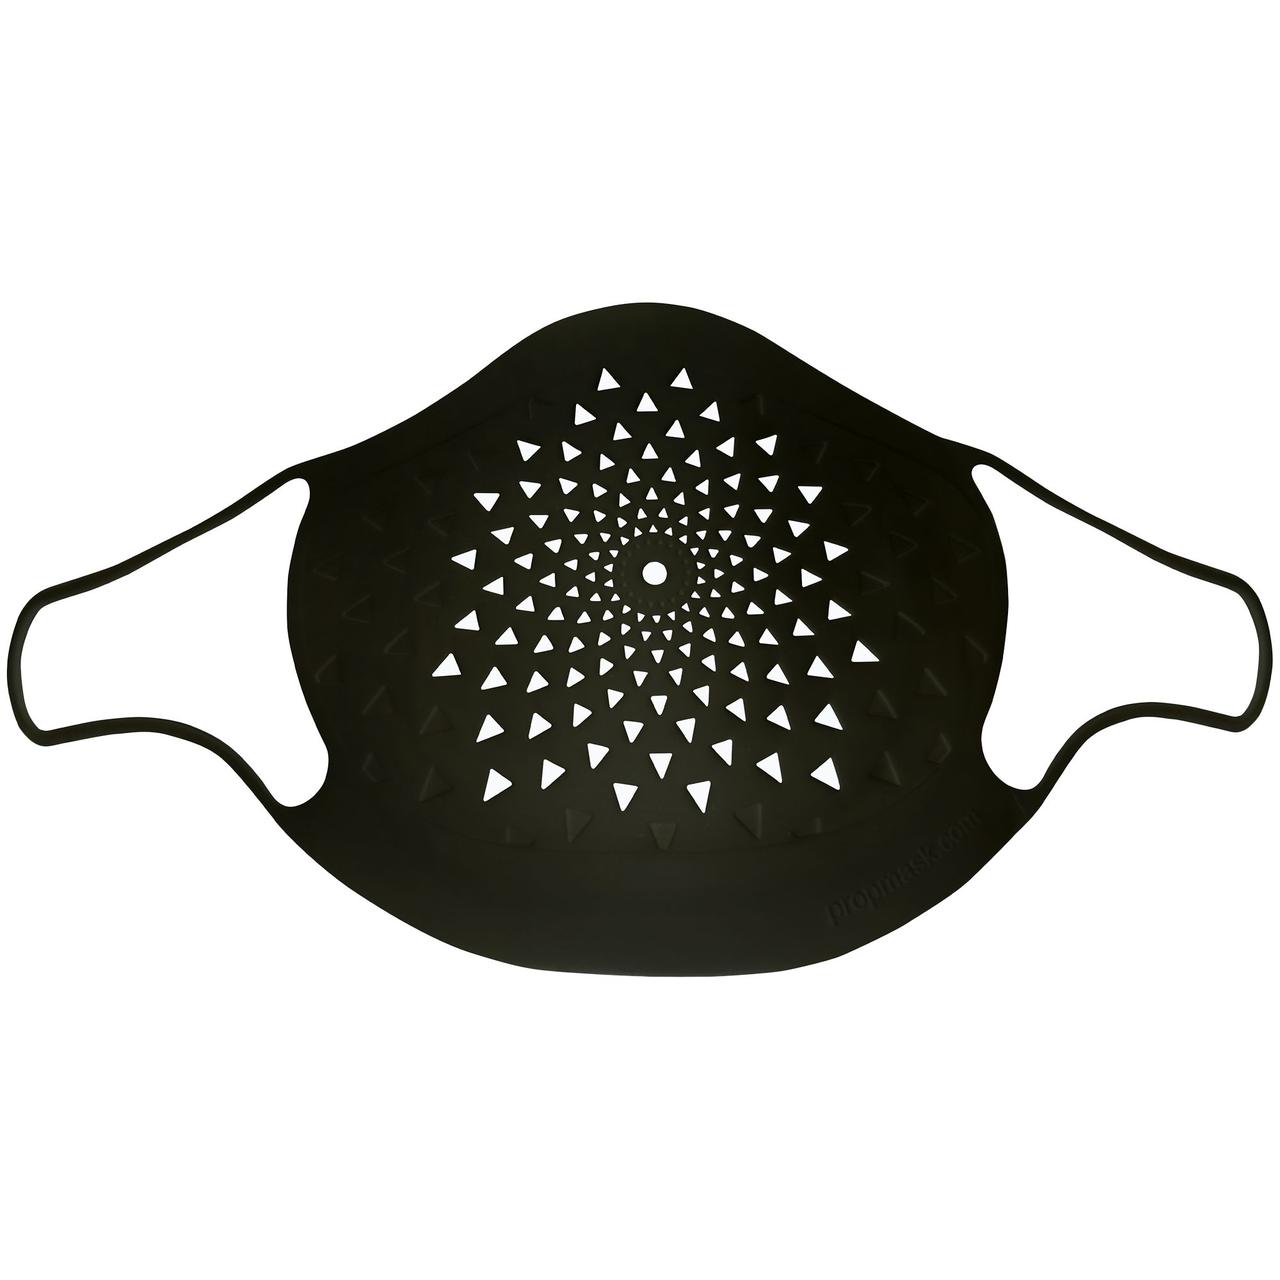 Многоразовая маска с прополисом PropMask, силиконовая, черная (артикул 13043.30)